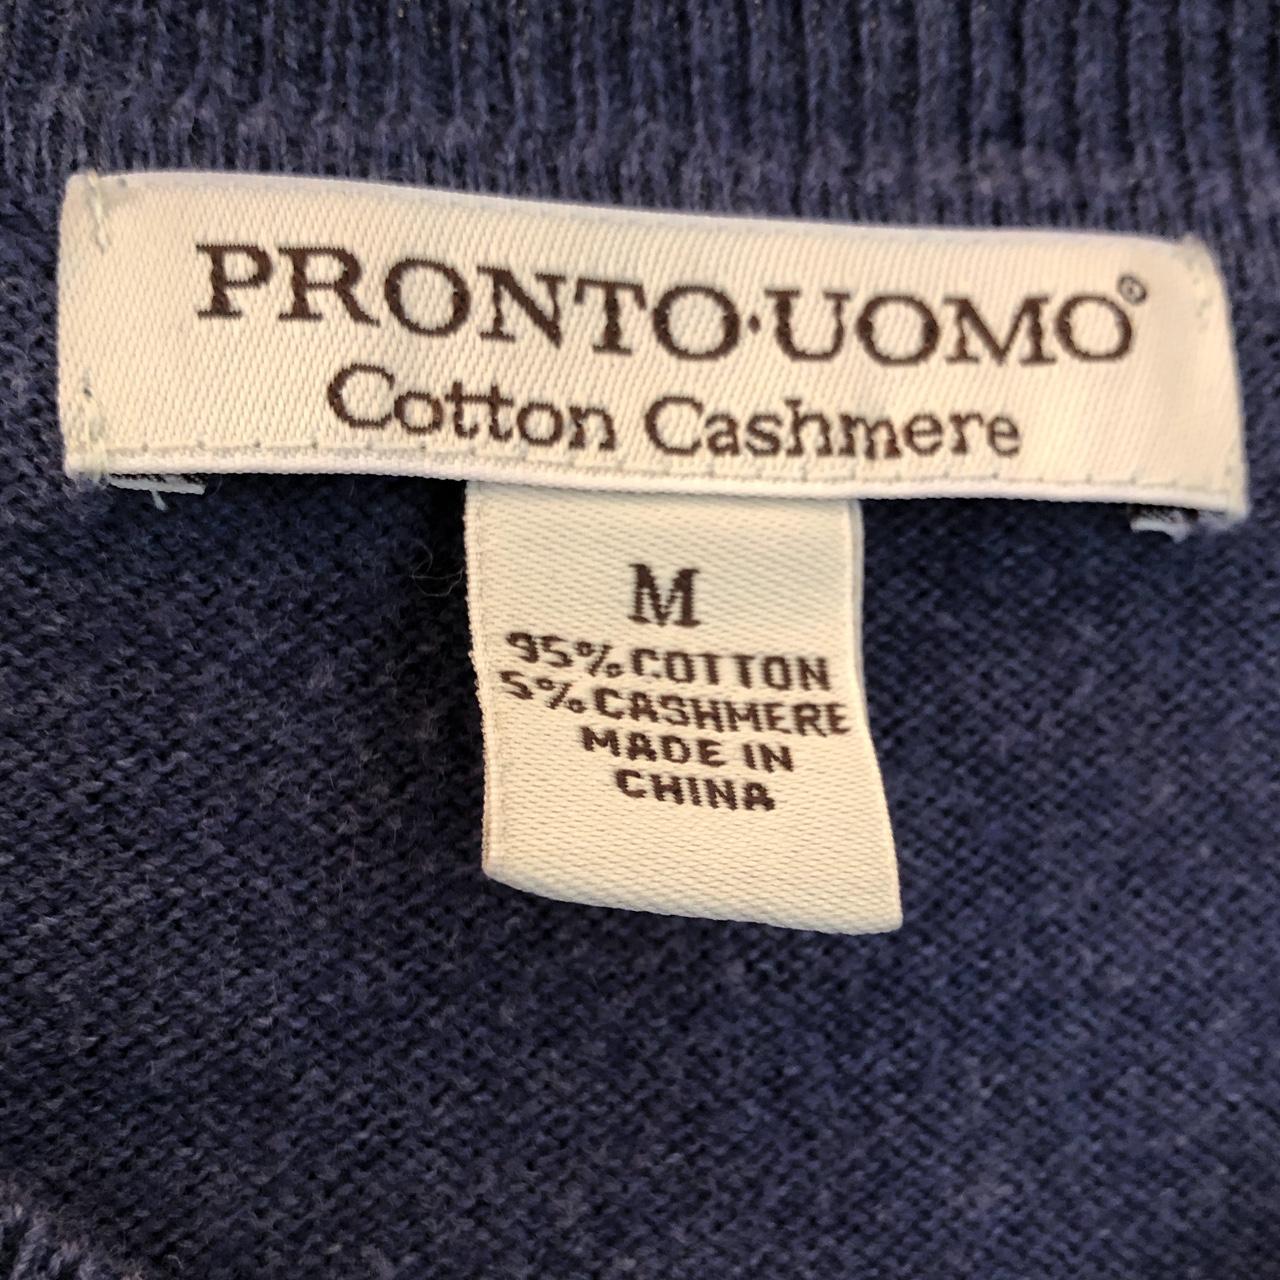 Navy Bluish Gray Cotton Cashmere Sweater ⭐️... - Depop